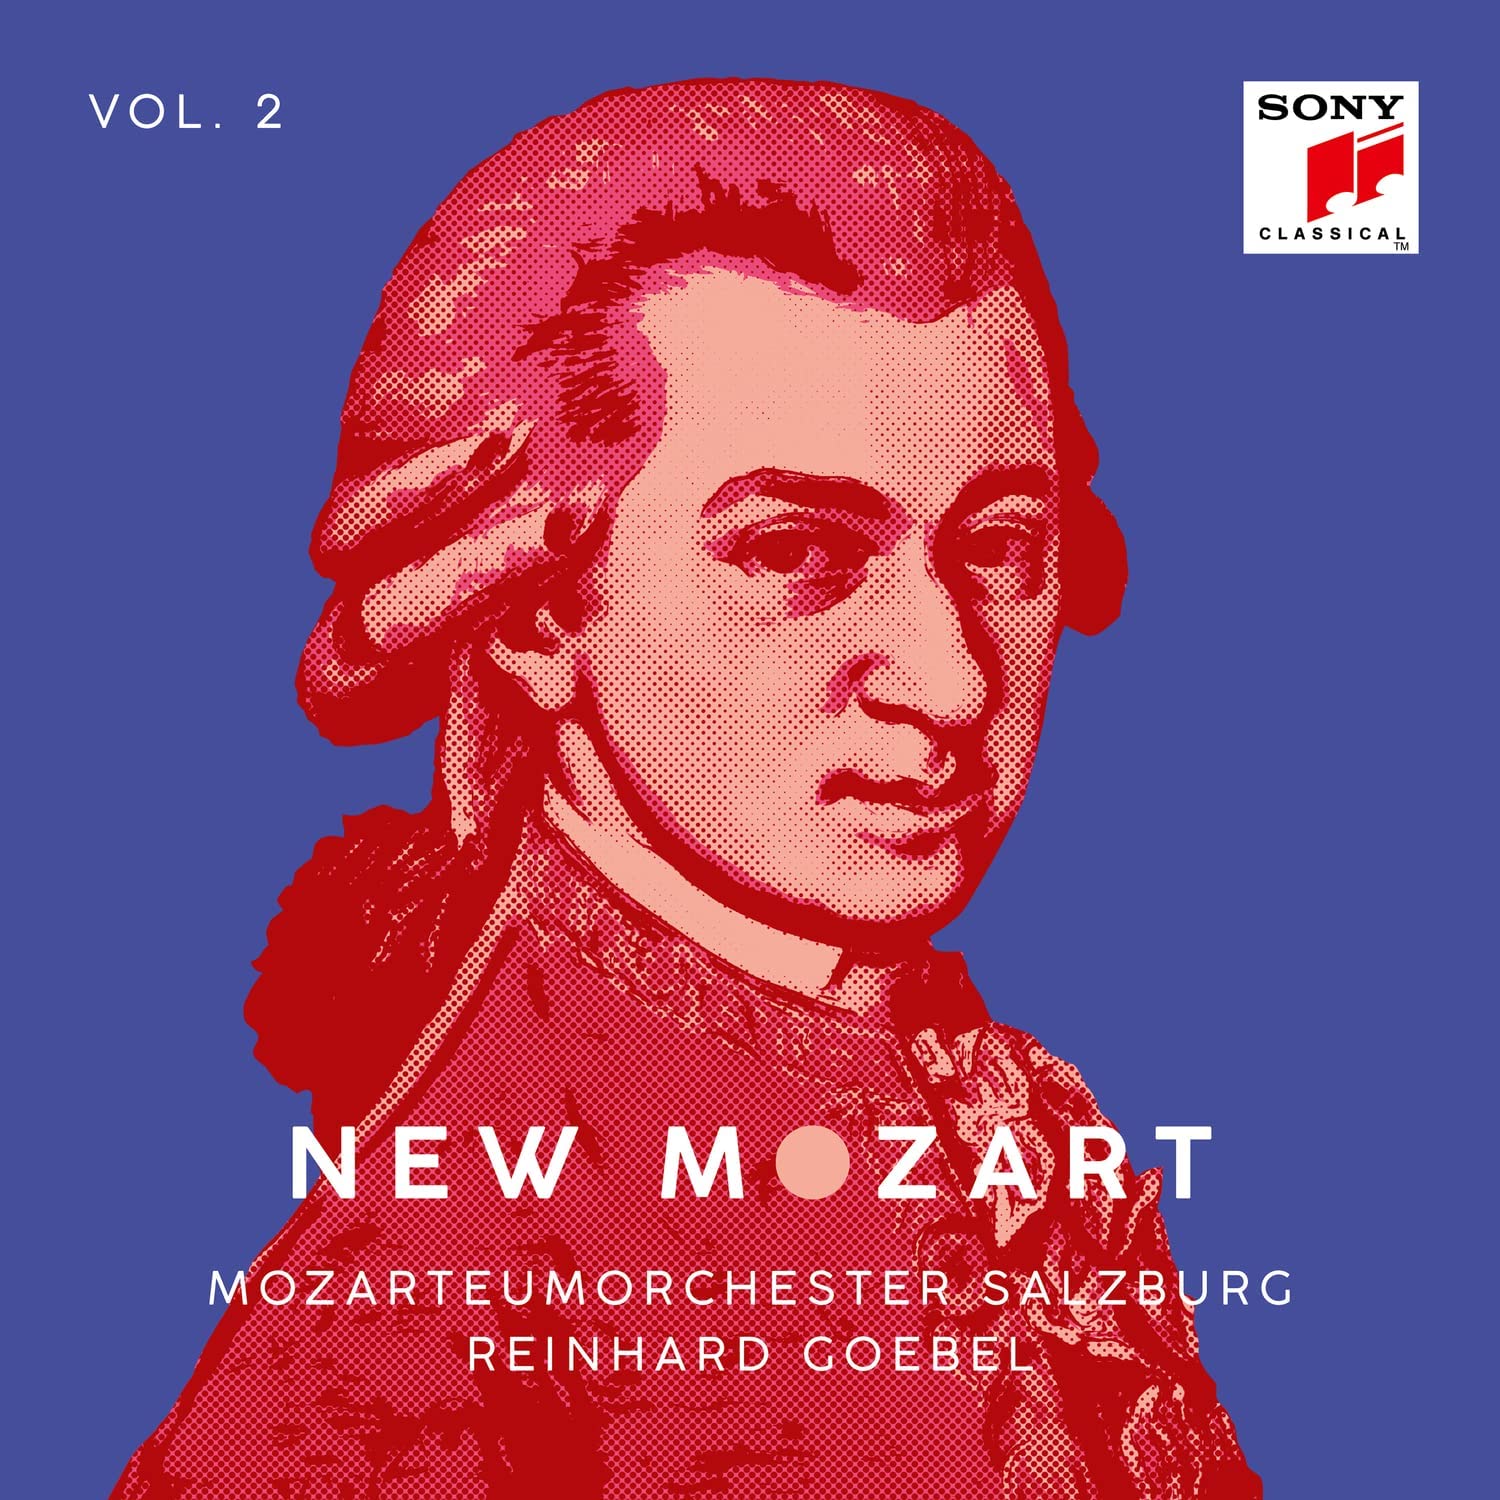 New Mozart - Volume 2 | Mozarteum Orchestra Salzburg, Reinhard Goebel